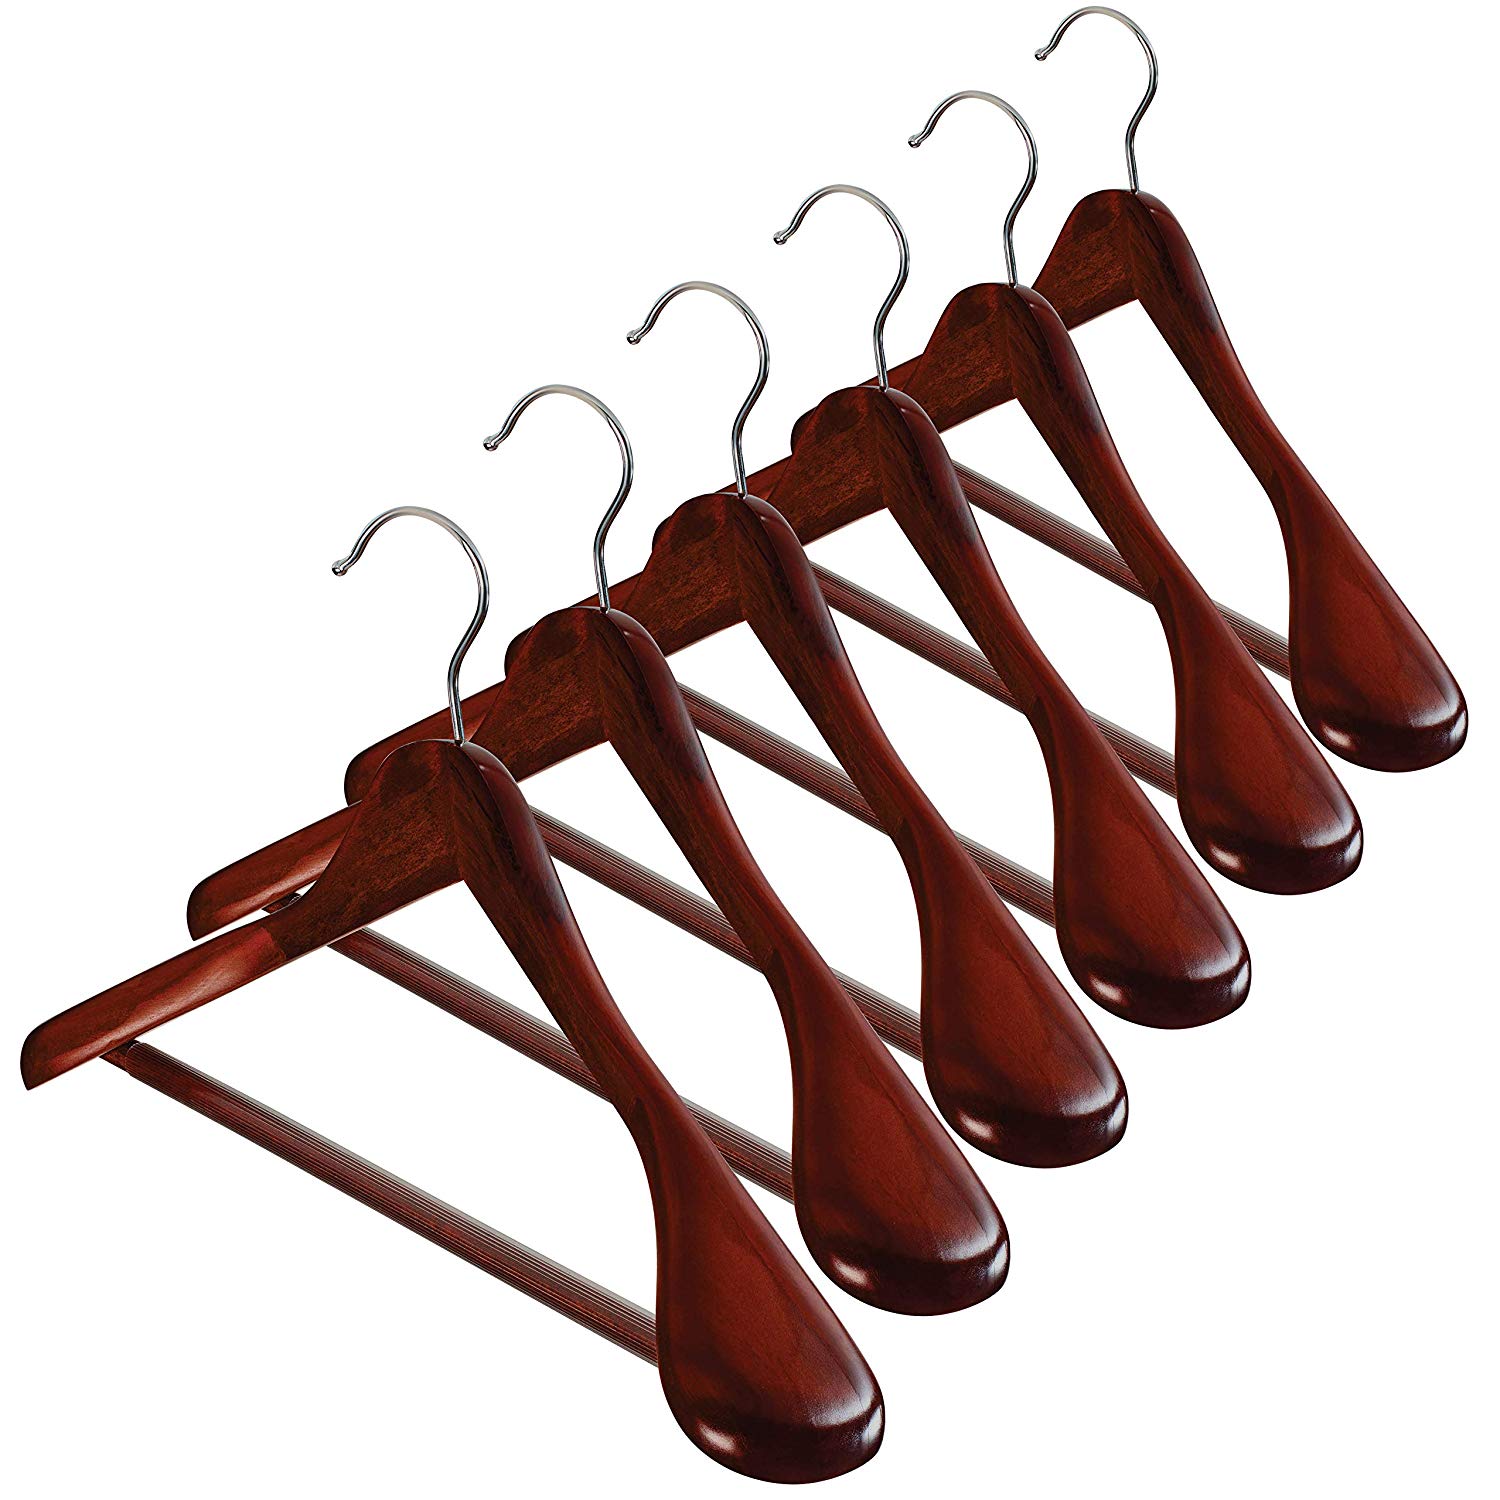 Zober Wooden Hangers, 6-Pack